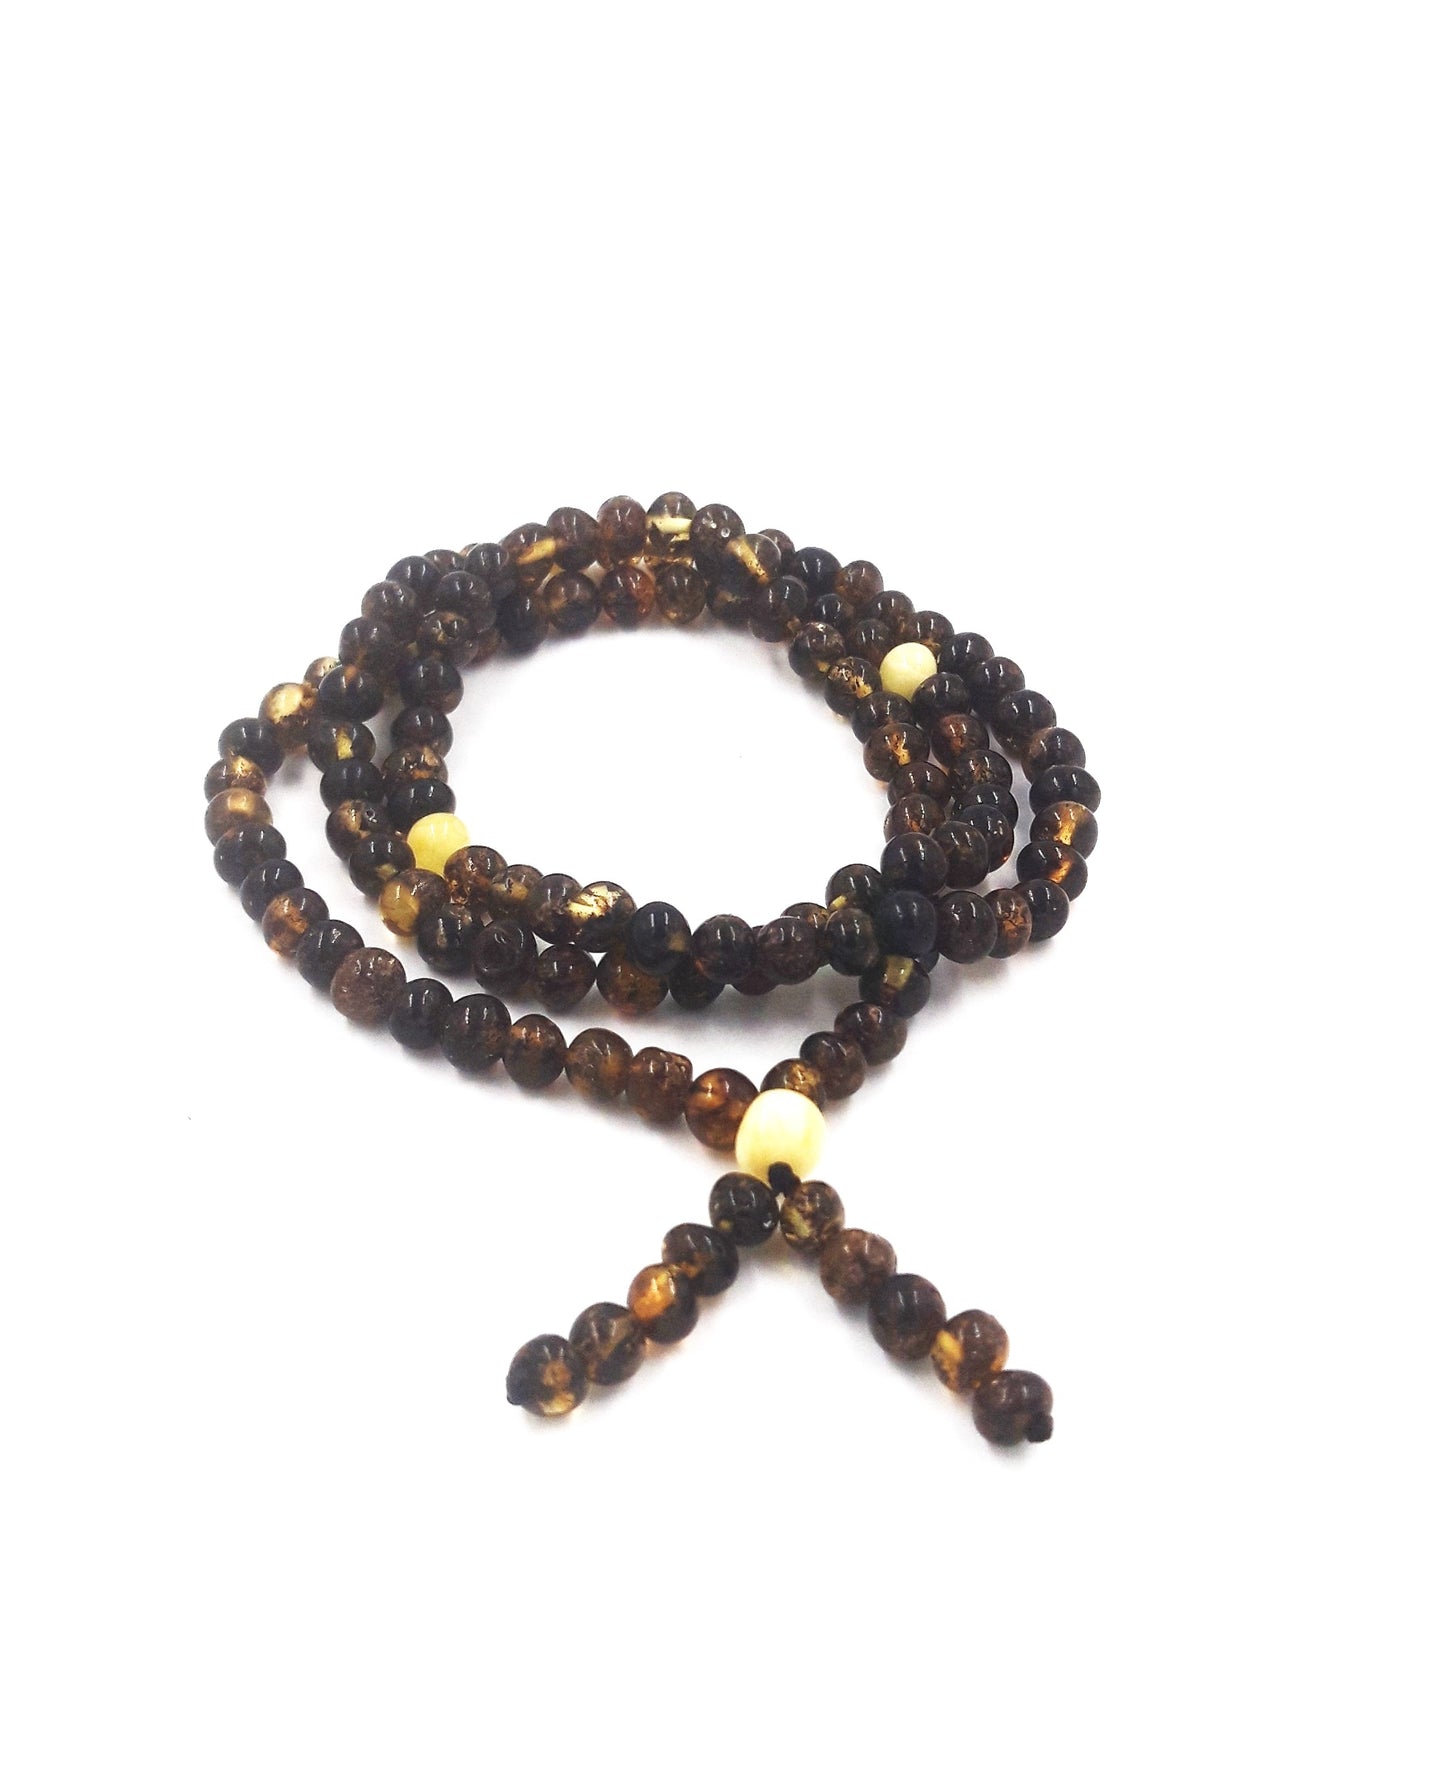 Prayer necklace